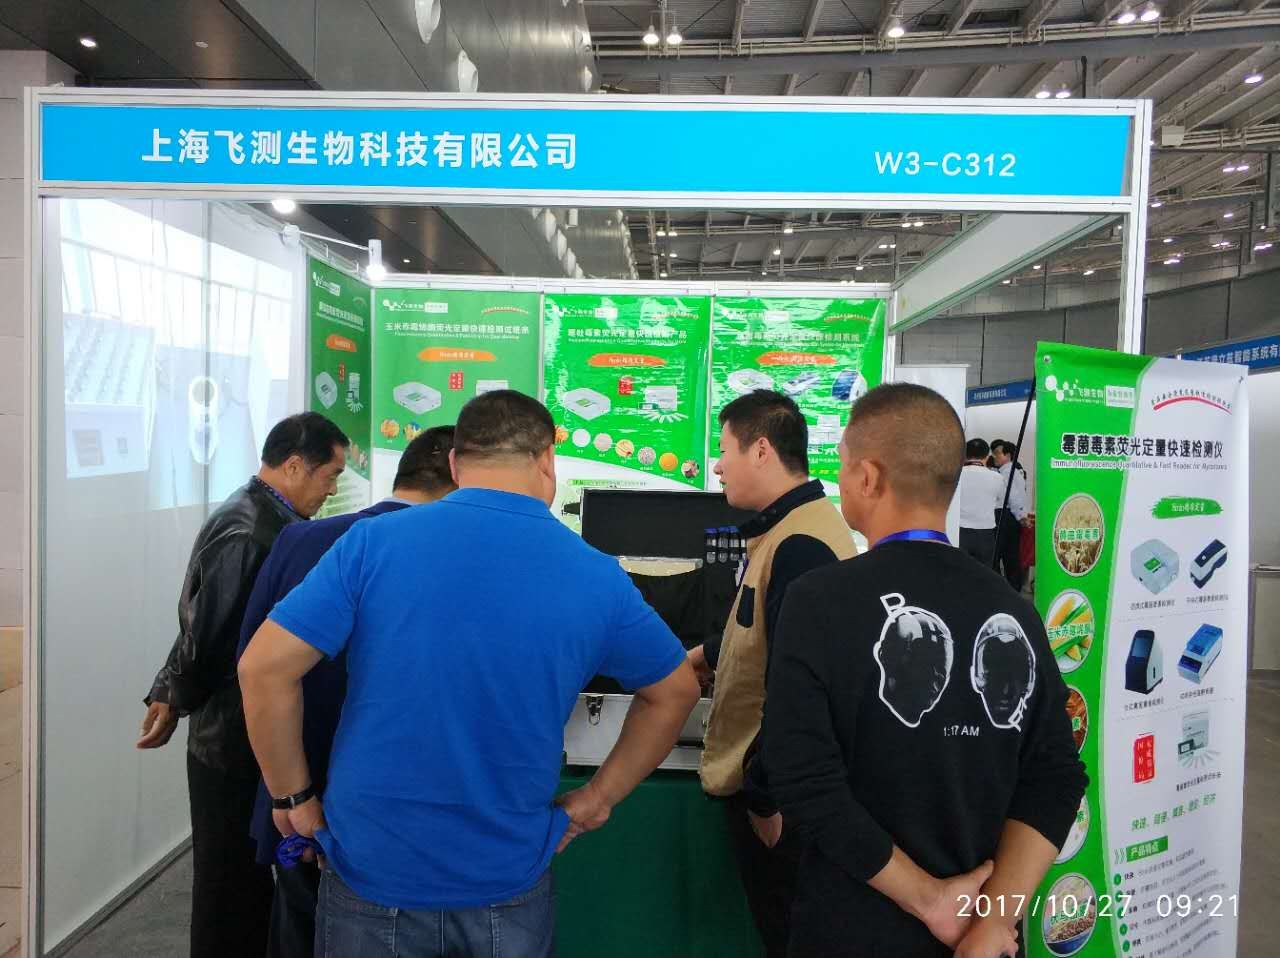 访客咨询上海飞测真菌毒素快速检测箱